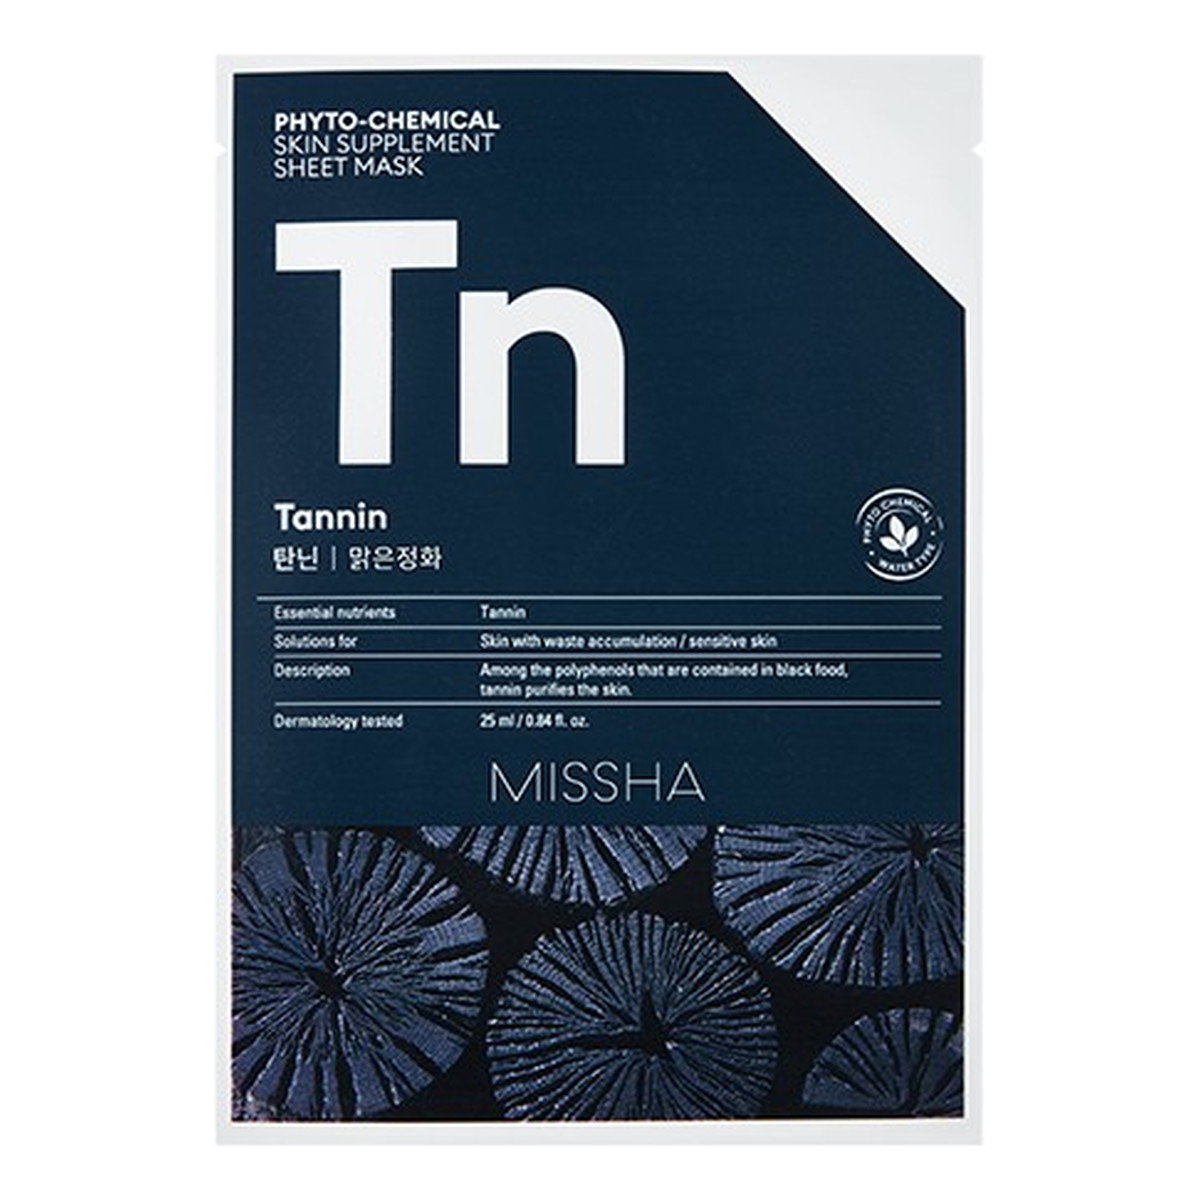 Missha Phyto-Chemical oczyszczająca maska w płachcie na twarz Tannin 25ml